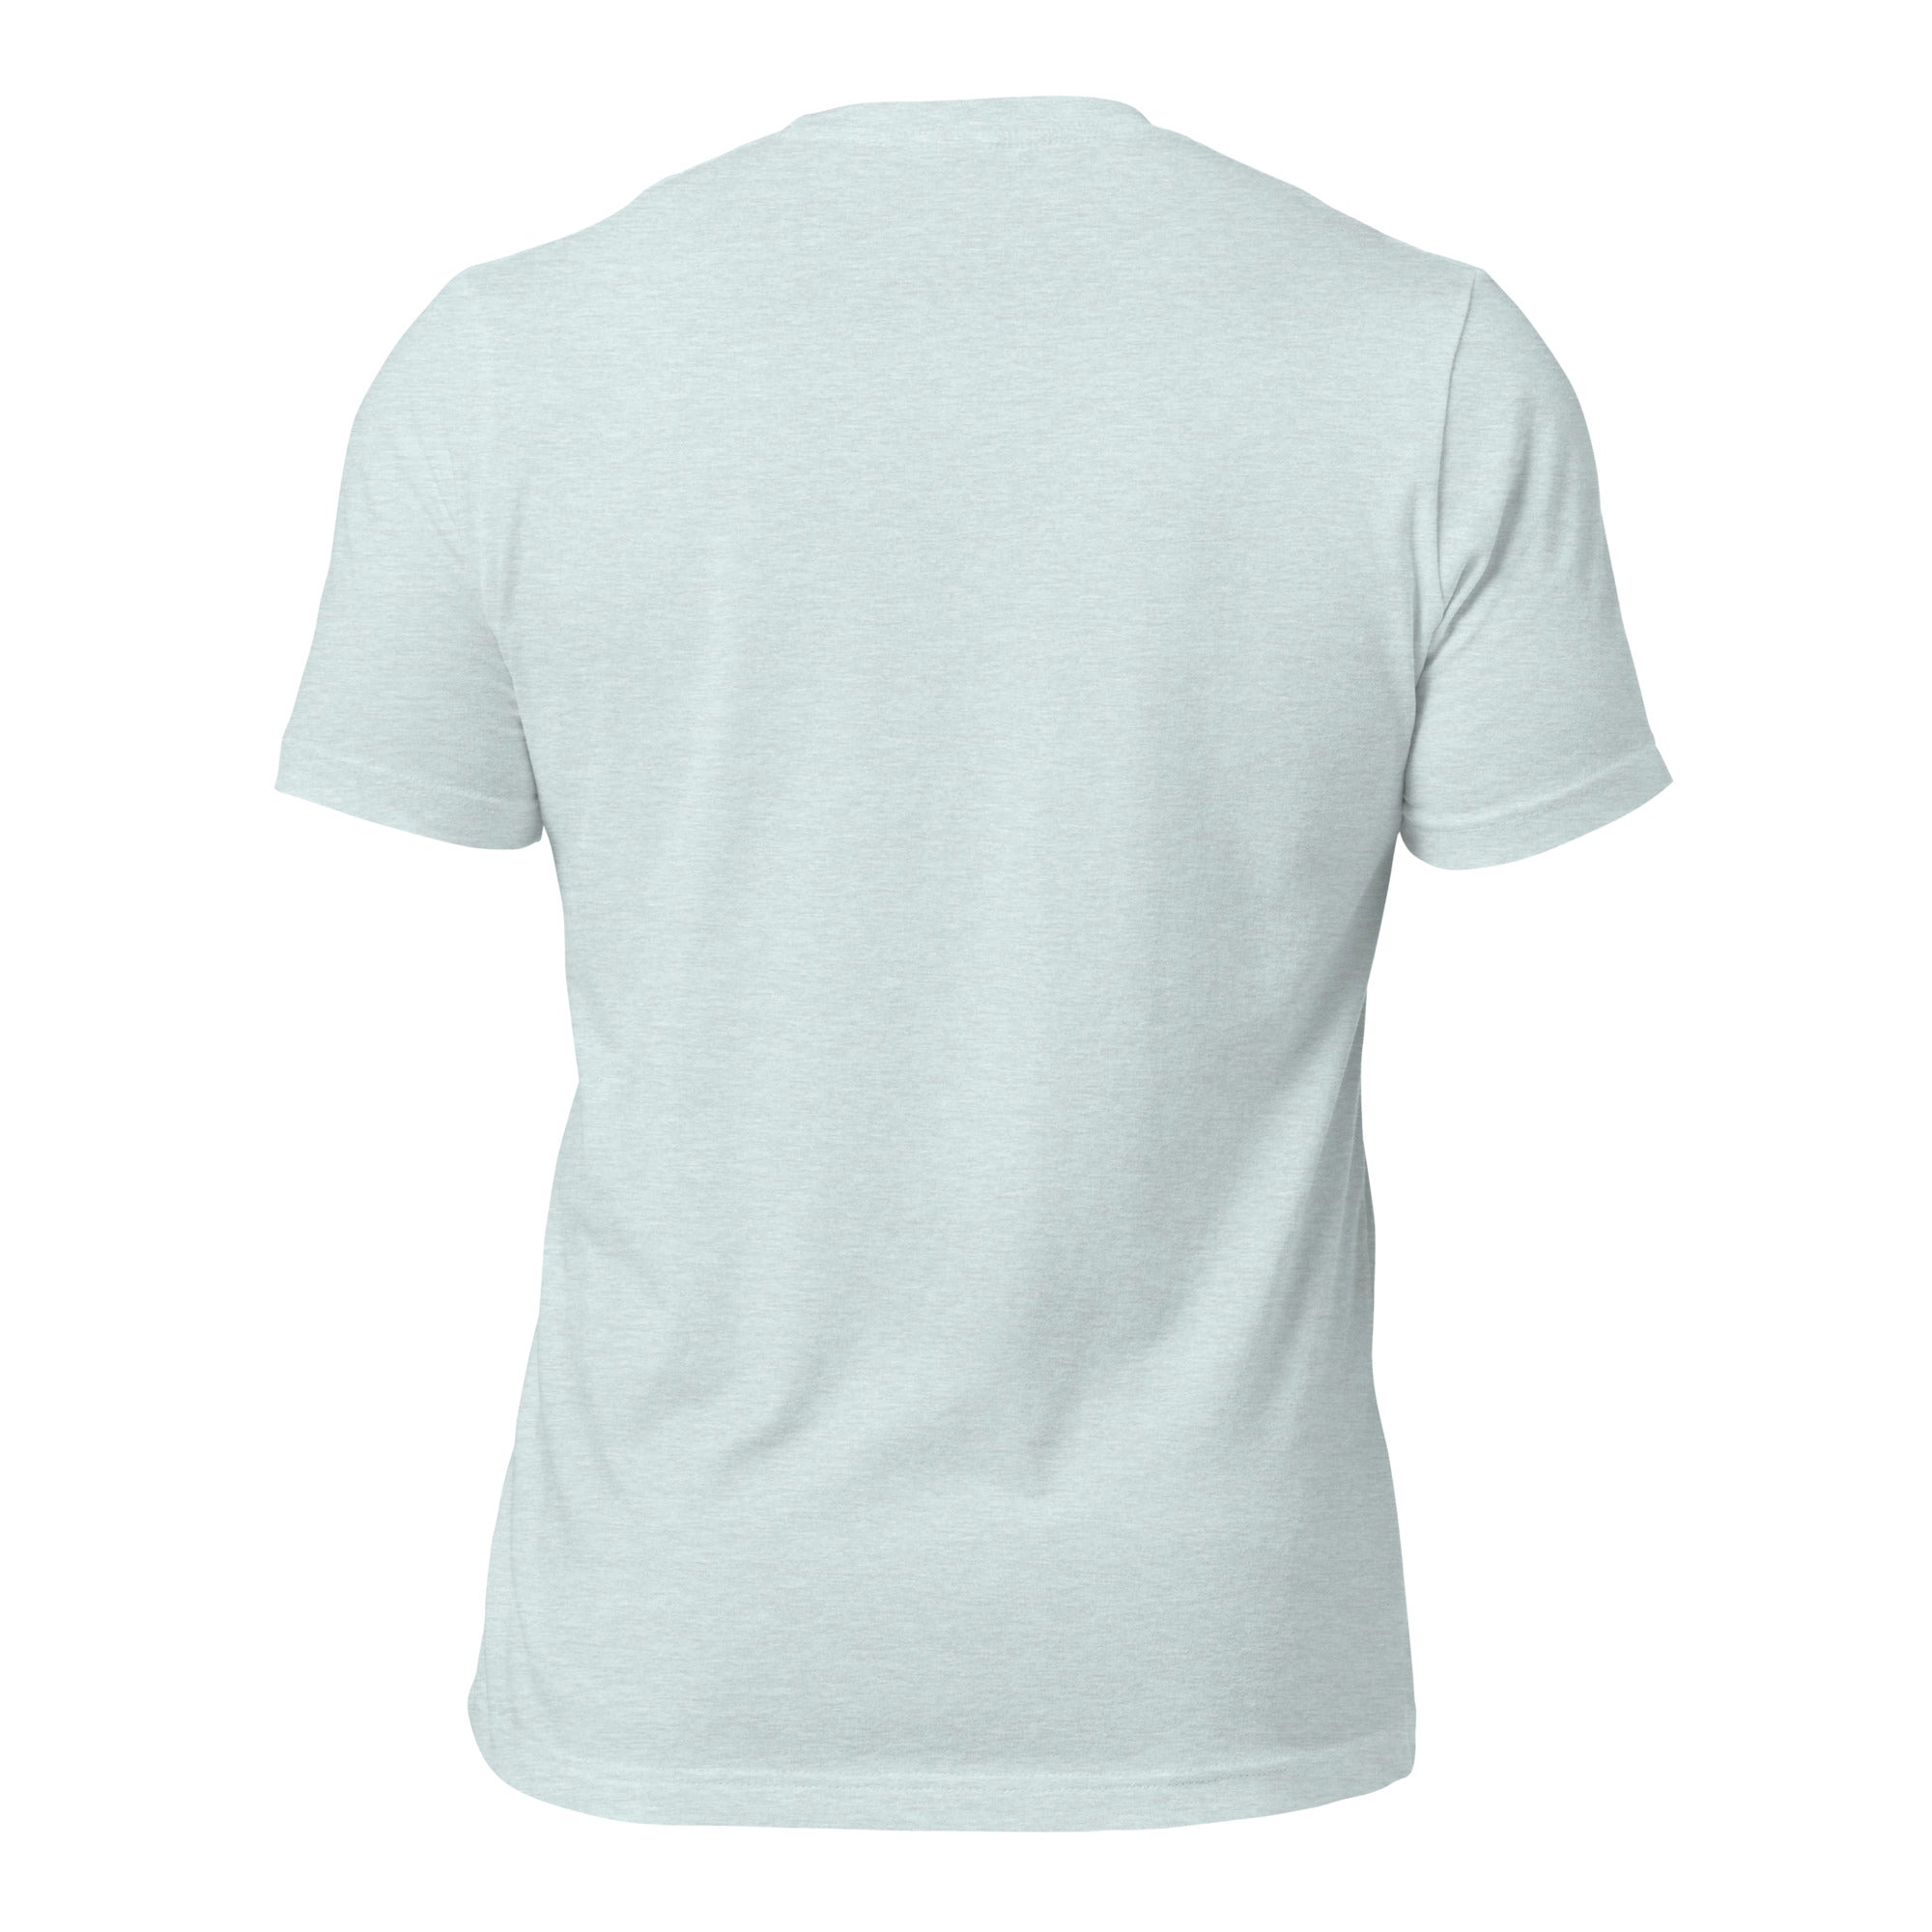 T-shirt en coton unisexe Make Bouillabaisse Not War Oh Bonne Mer sur couleurs chinées claires